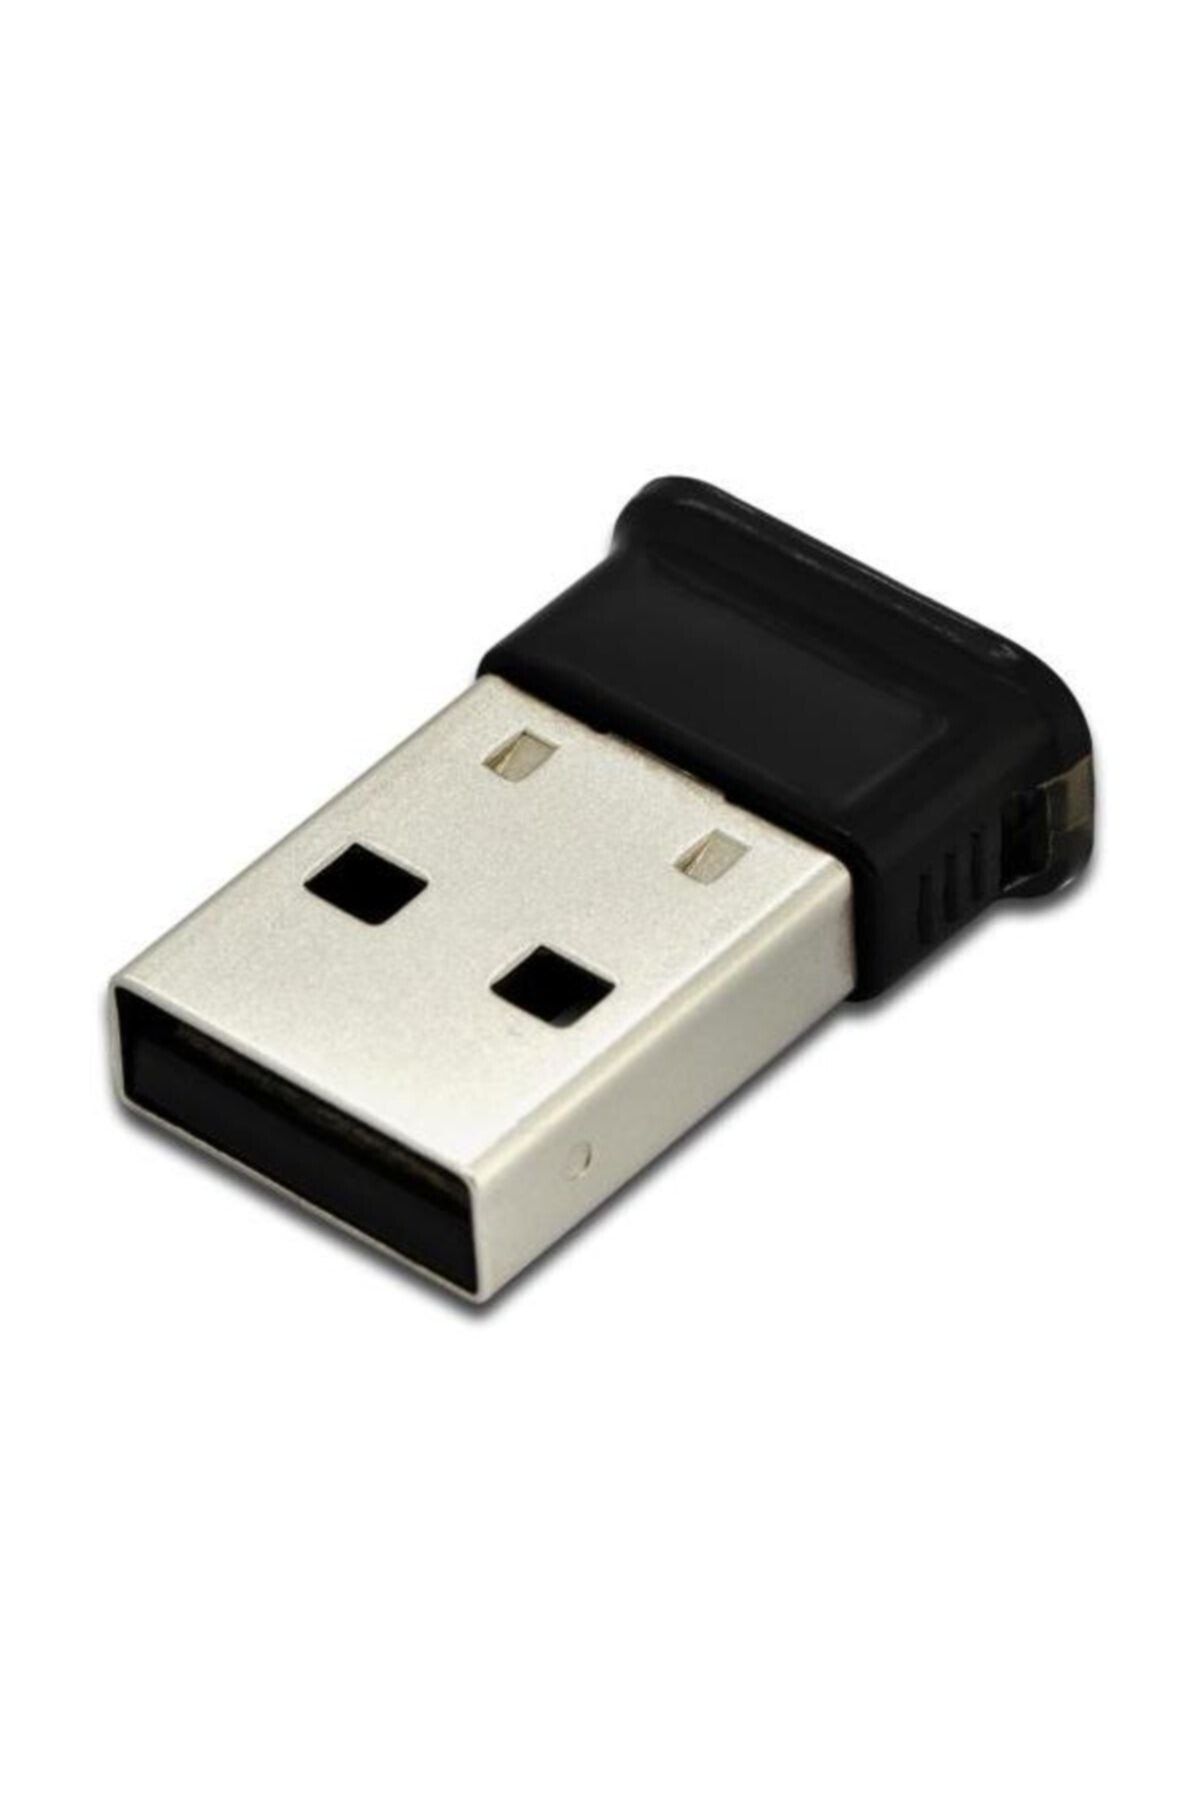 Assmann Digitus Bluetooth 4.0  Tiny USB Adaptör